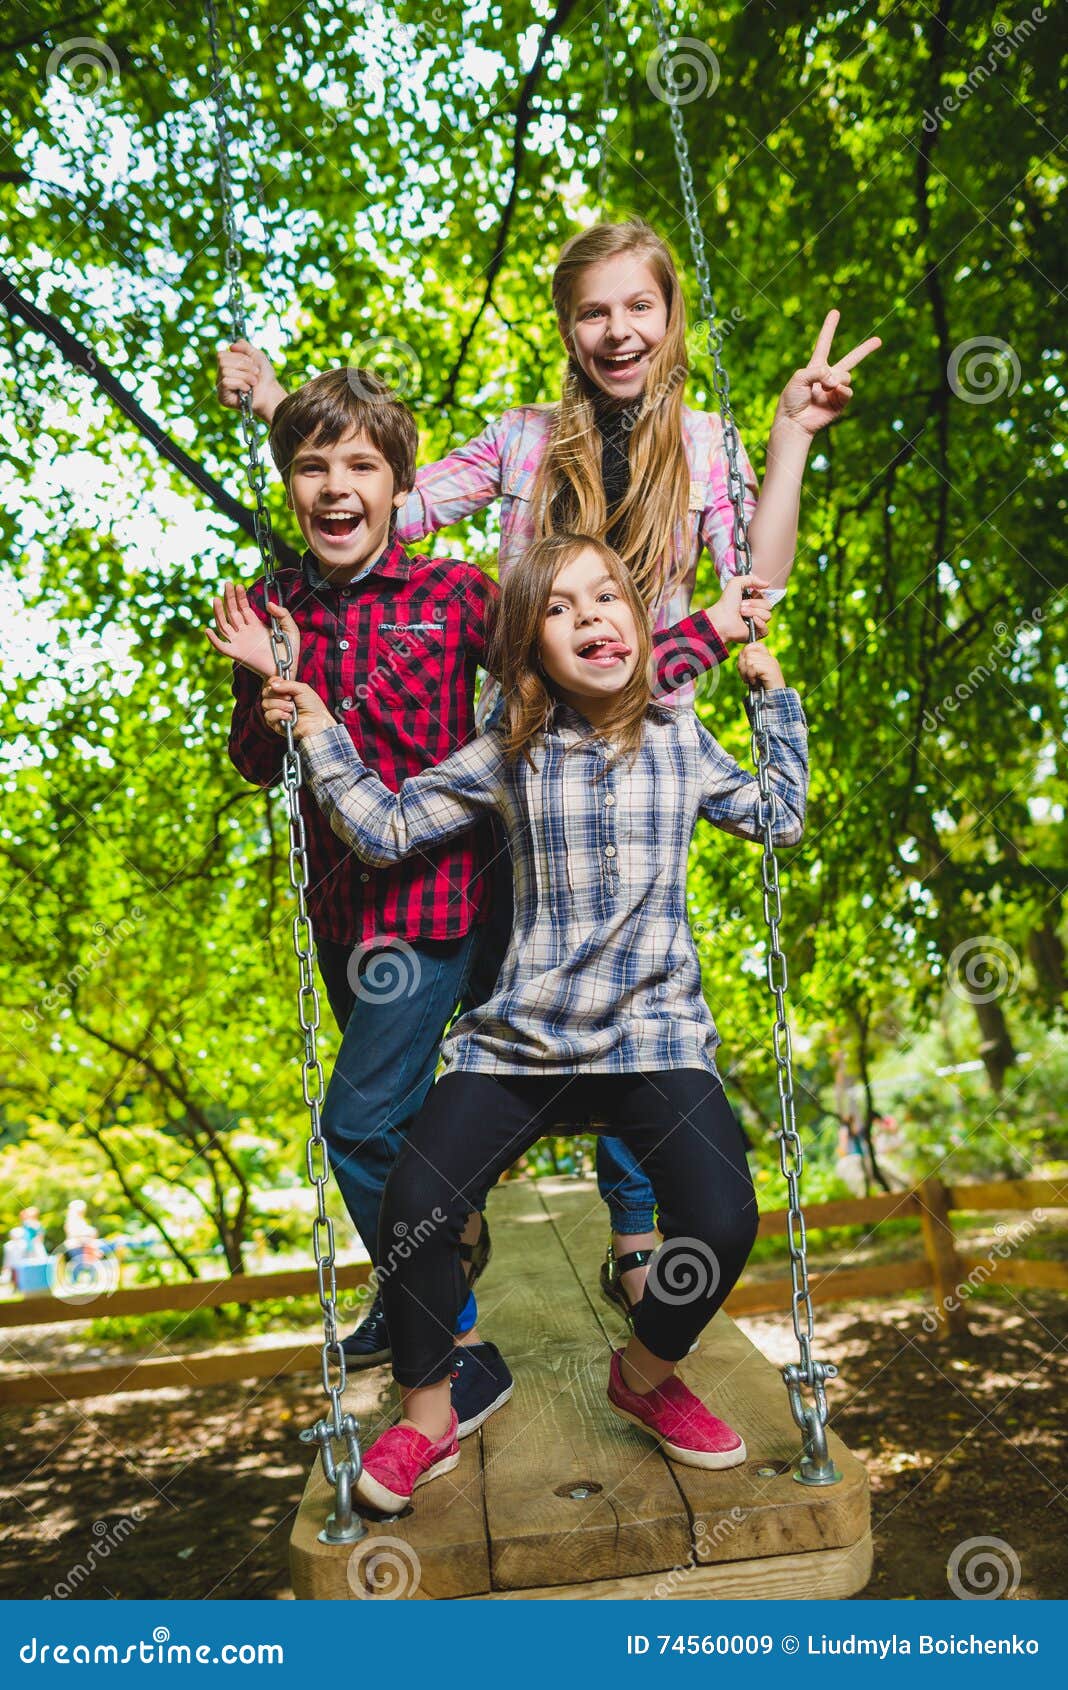 Подростки лето в москве. Дети веселятся. Дети на площадке. Подростки на детской площадке. Фотосессия на детской площадке подросткам.